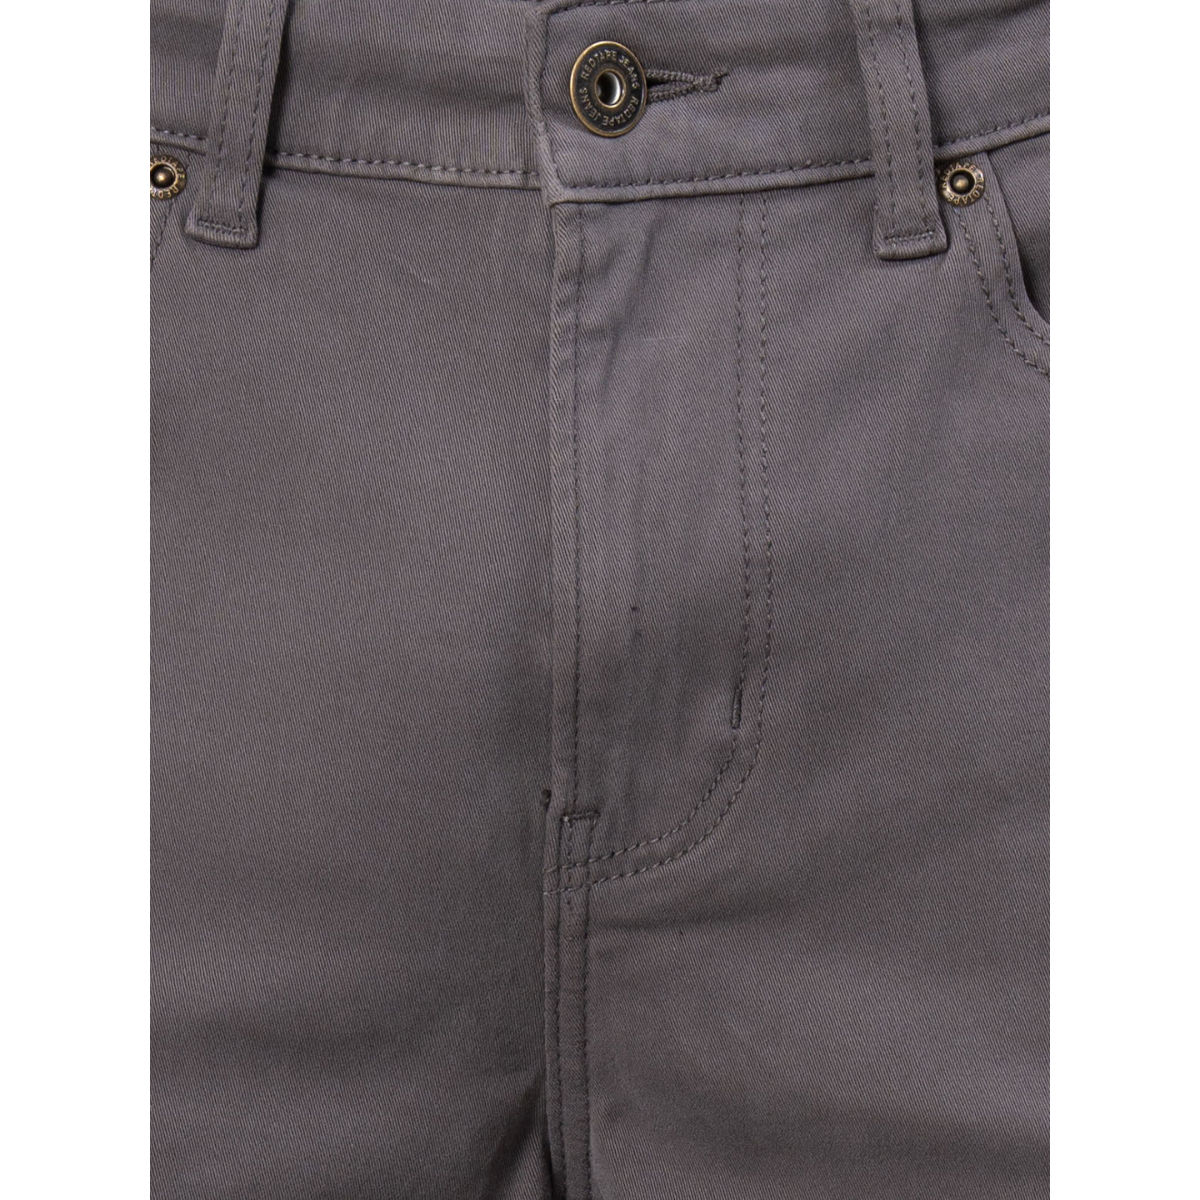 RED TAPE Regular Men Black Jeans - Buy RED TAPE Regular Men Black Jeans  Online at Best Prices in India | Flipkart.com